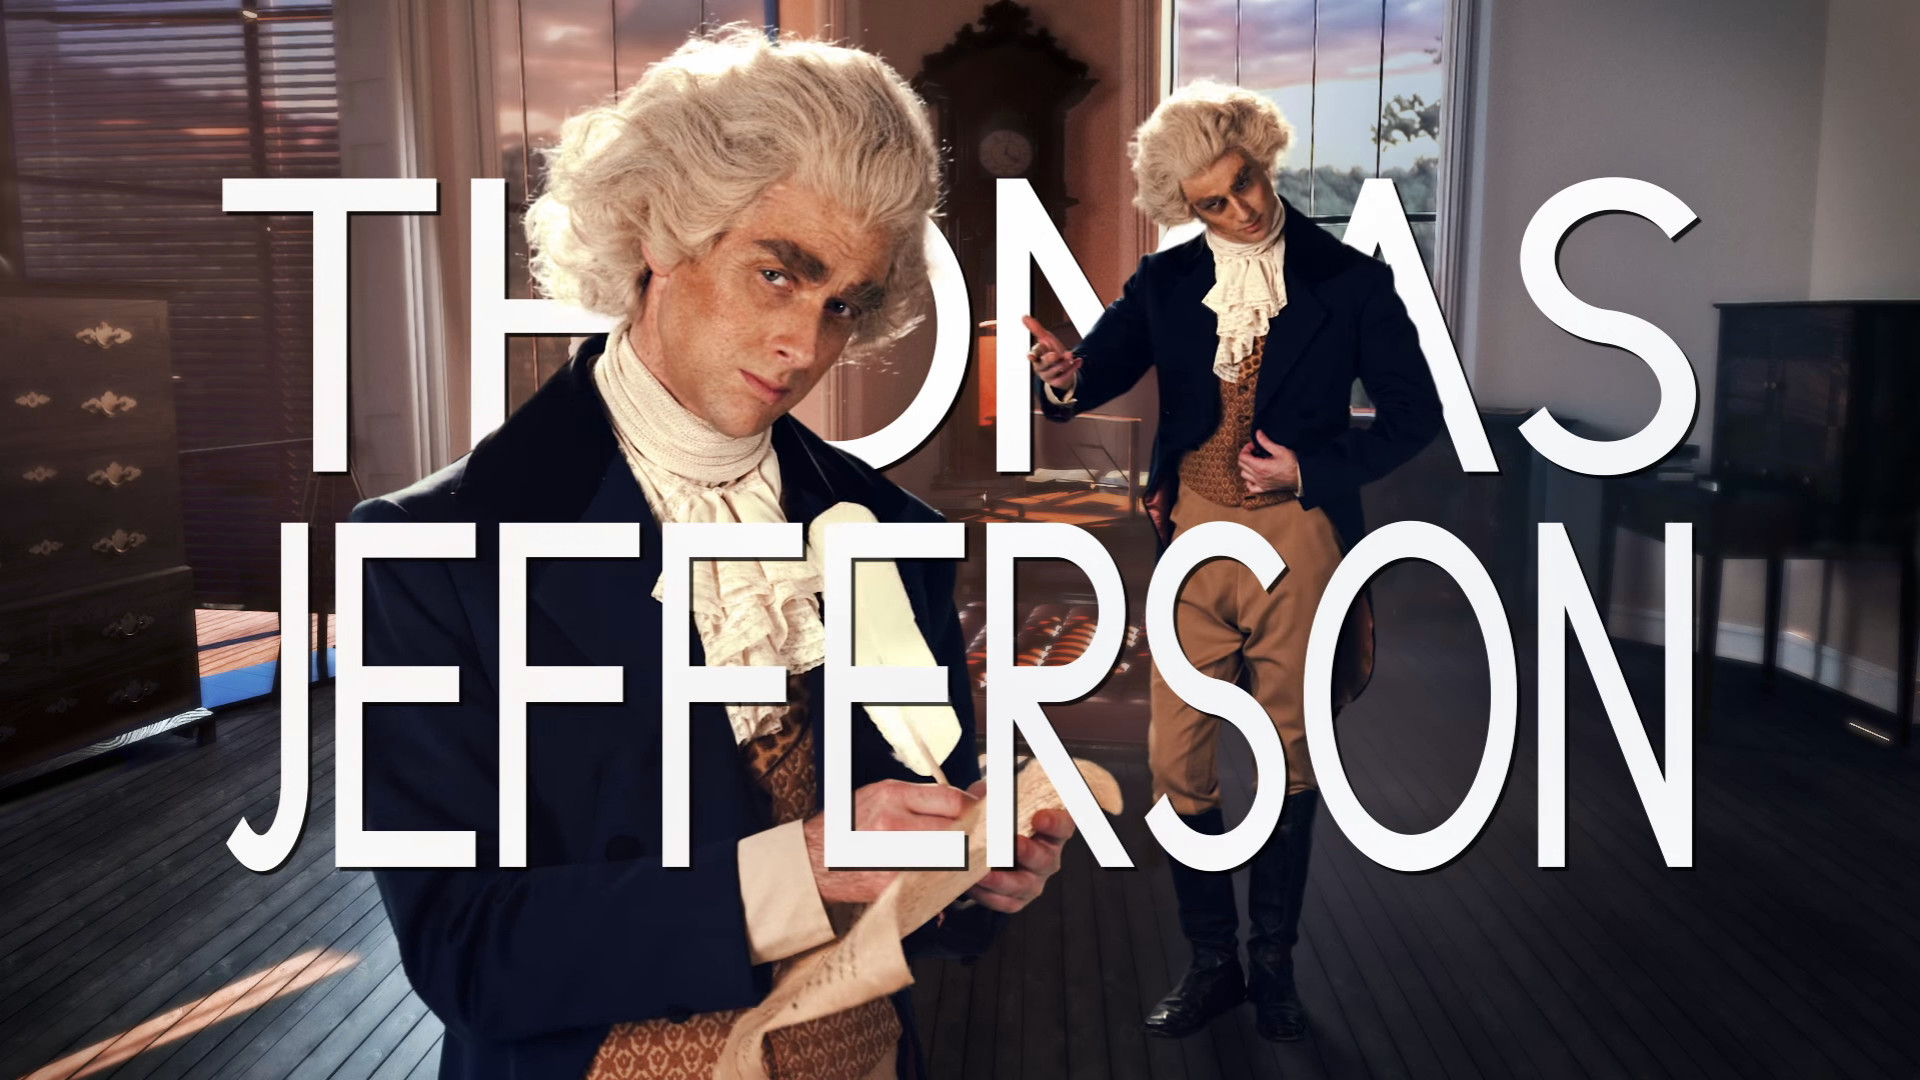 1920x1080 Nice Peter as Thomas Jefferson